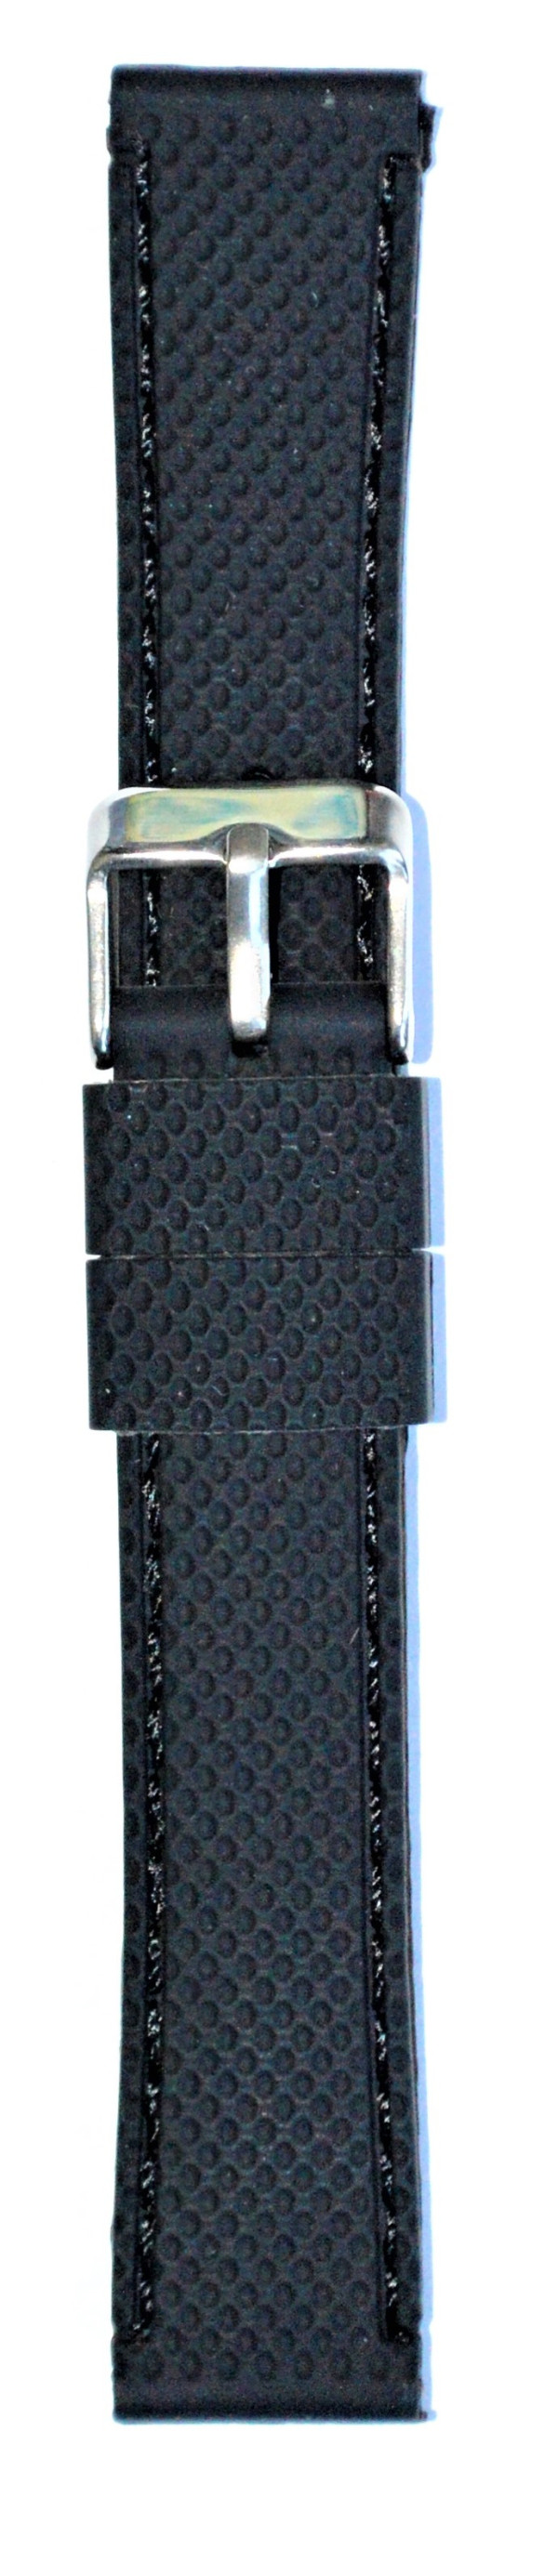 Silikonski kaiš - SK 18.01 Crna boja 18mm